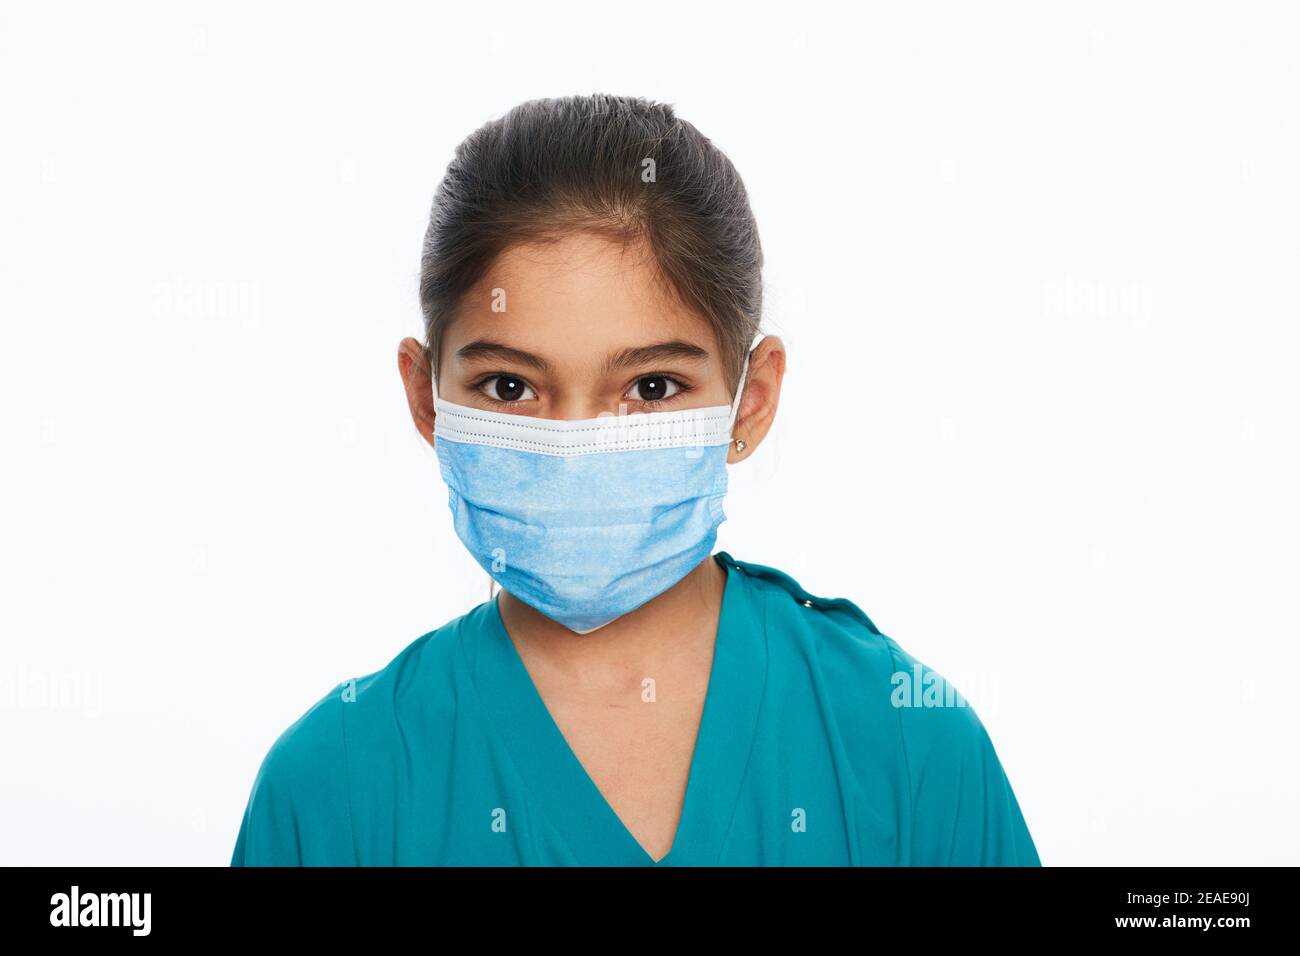 Bambina asiatica con maschera chirurgica protettiva durante una pandemia globale, isolata su bianco Foto Stock